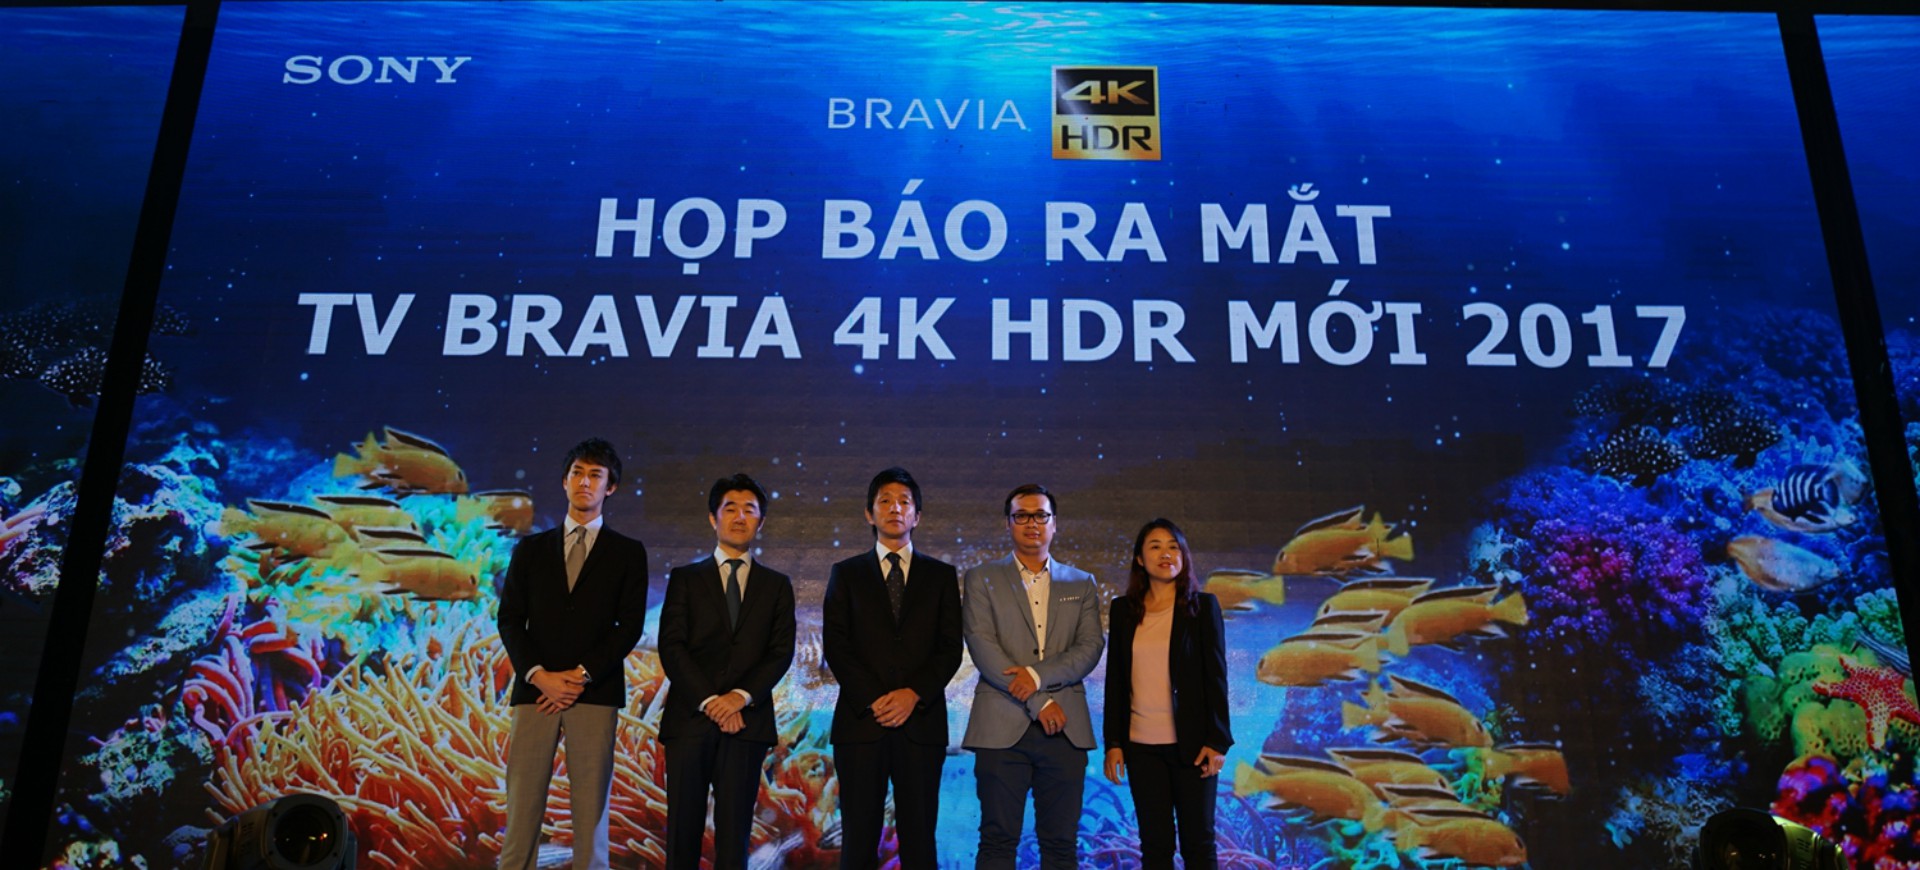 SONY ra mắt dòng TV Bravia 4K HDR 2017